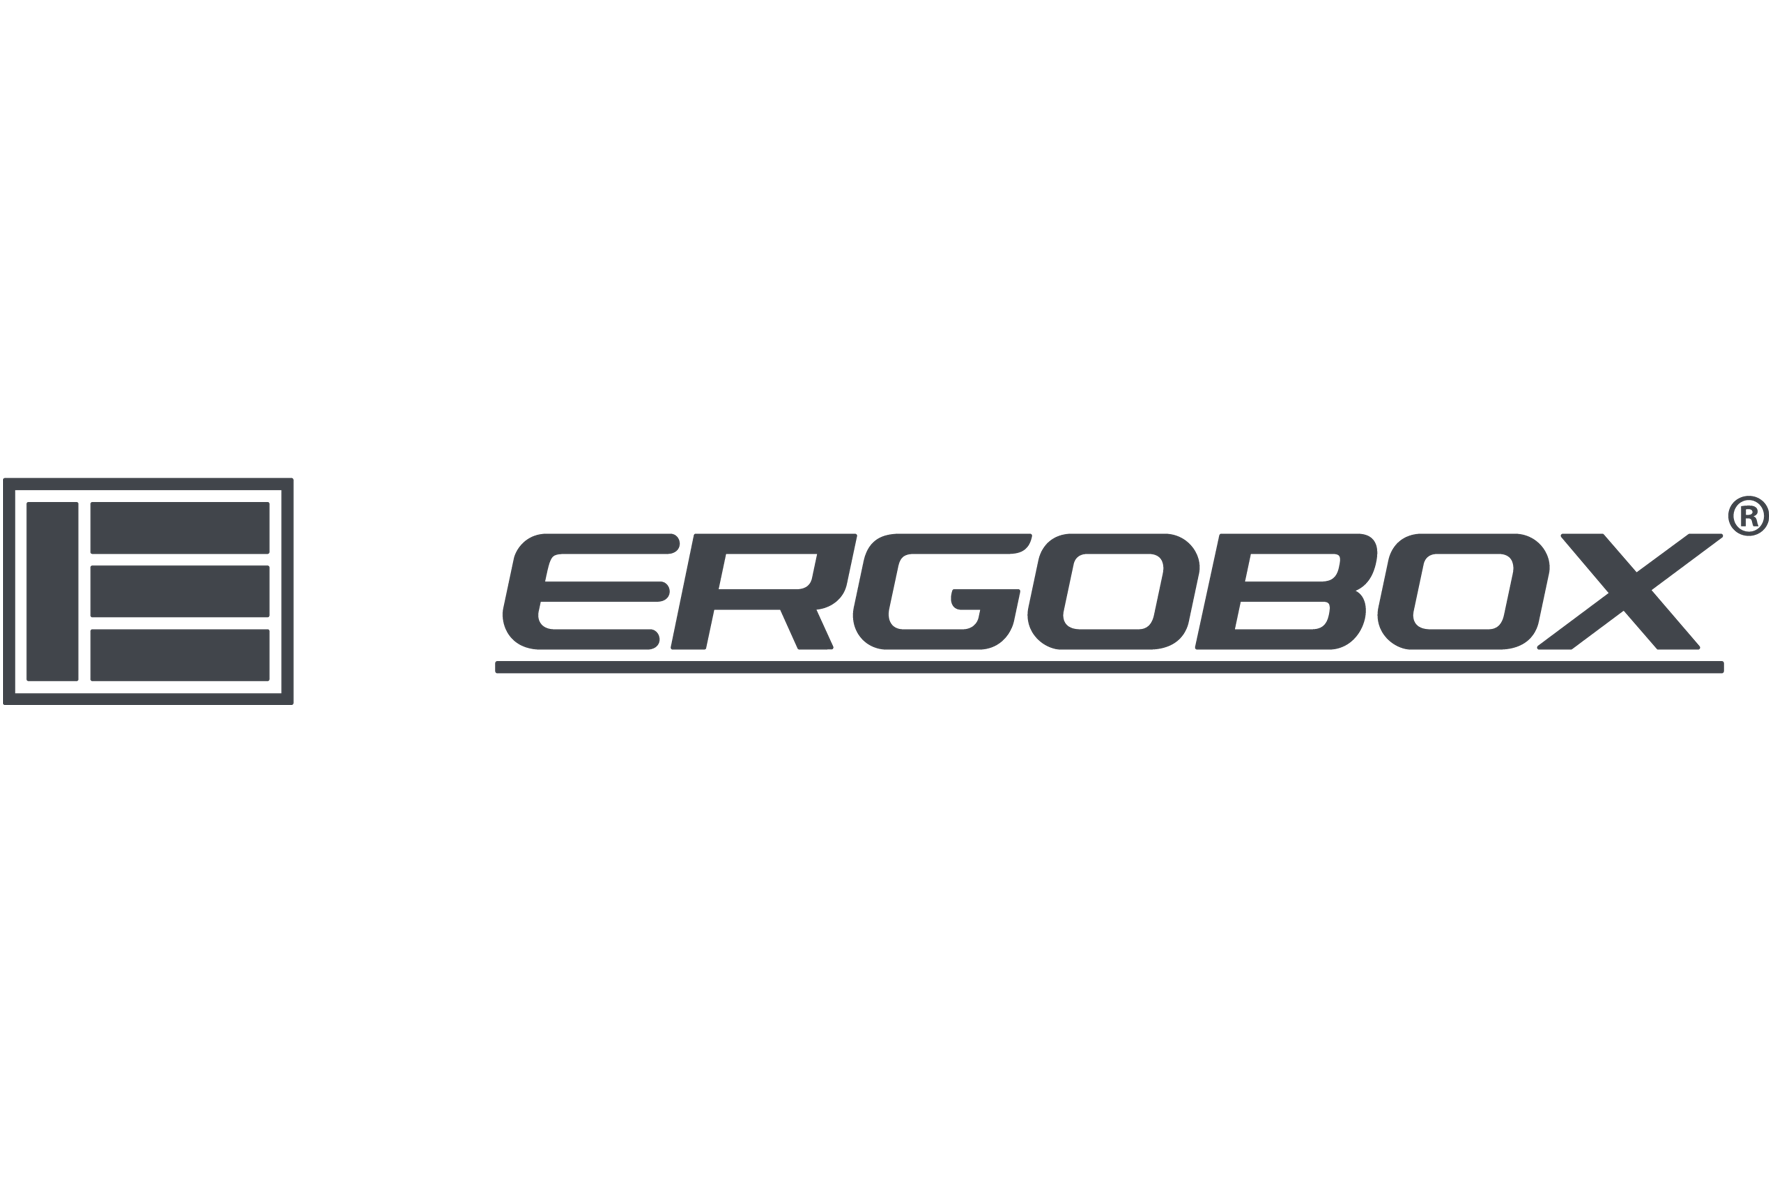 ERGOBOX